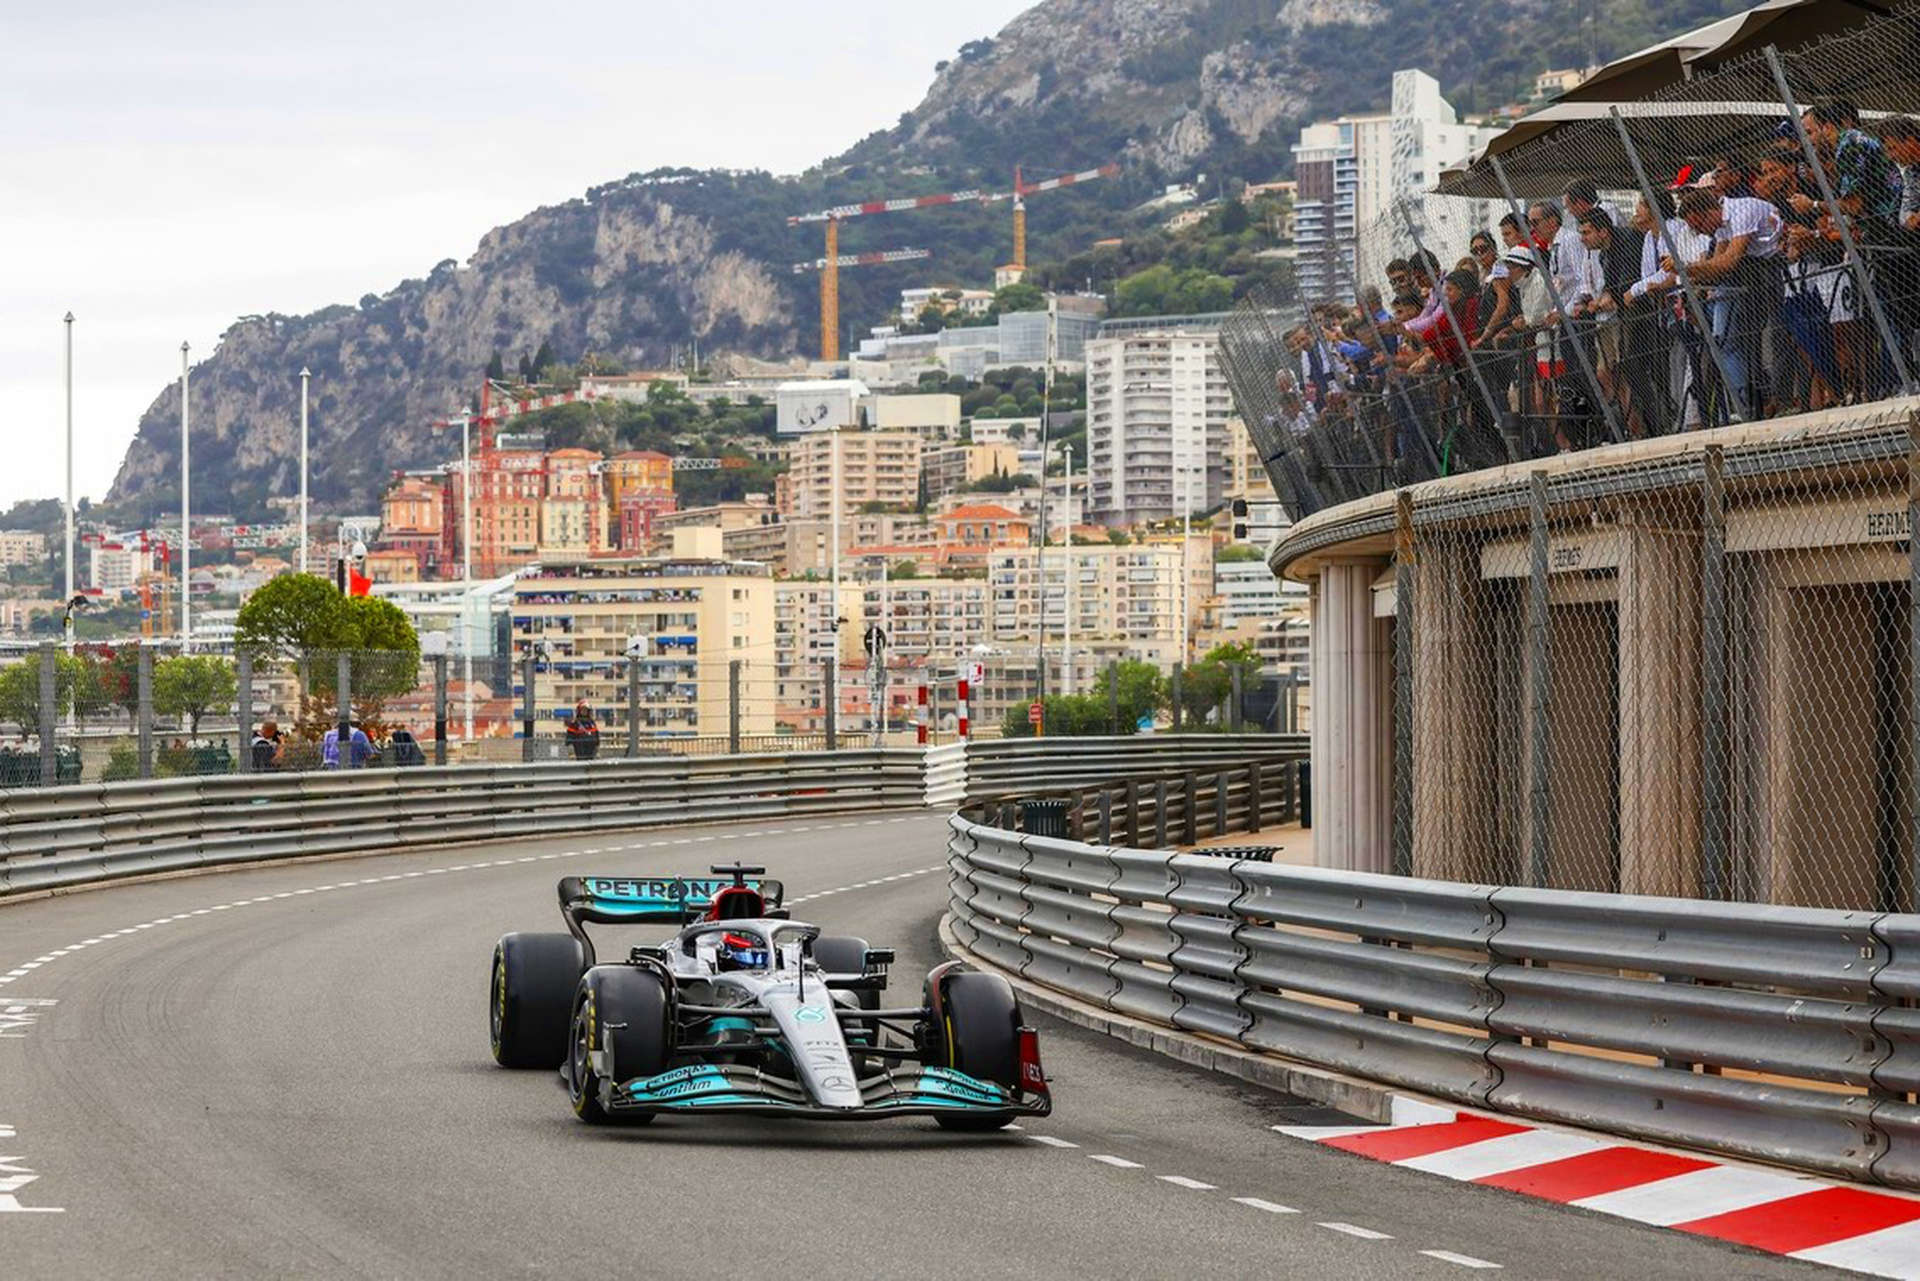 Grand Prix™ Monako stanowi prawdziwy test umiejętności kierowców